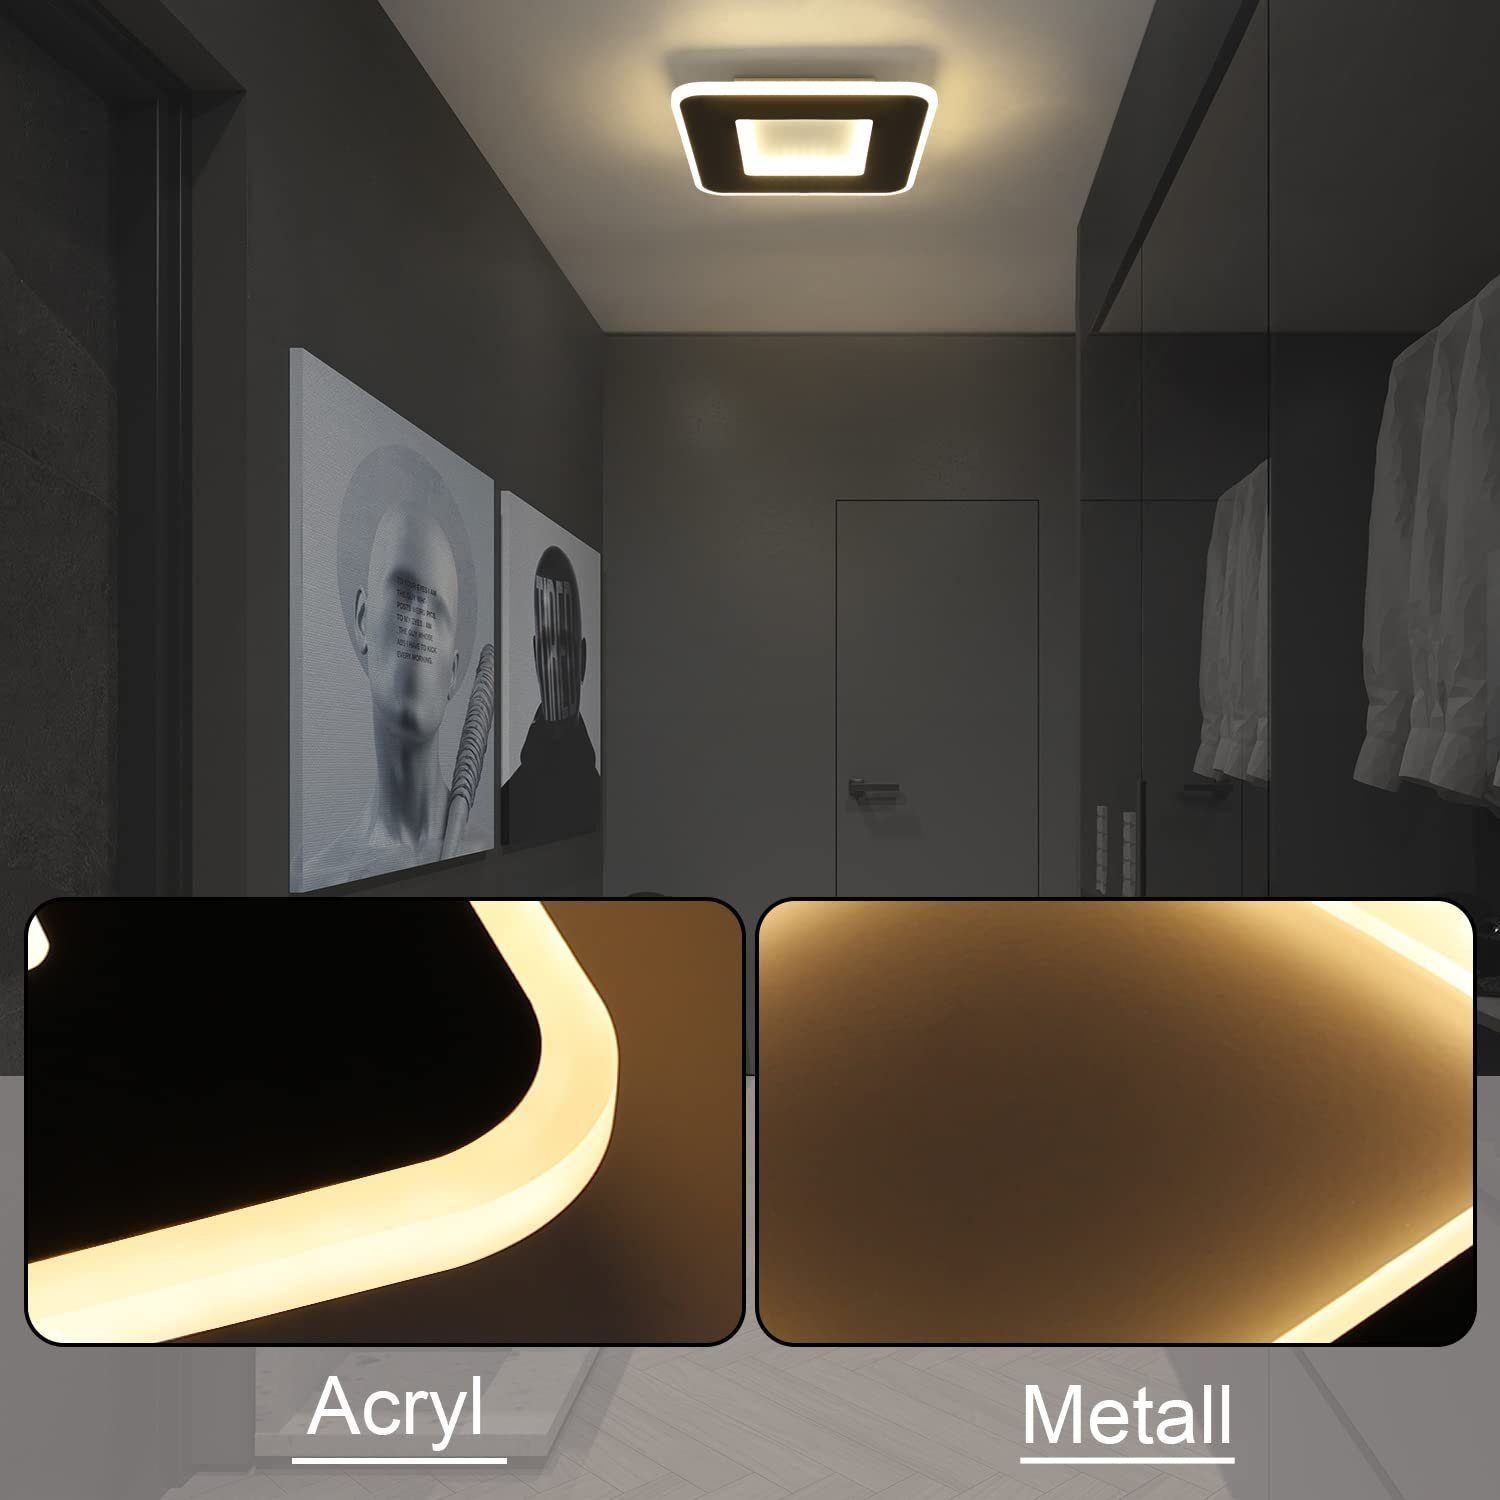 Wohnzimmer Deckenbeleuchtung, LED Flur für Küche integriert, Warmweiß, Nettlife Deckenlampe Deckenleuchte Modern Quadratisch Schwarz 23W LED fest Schlafzimmer